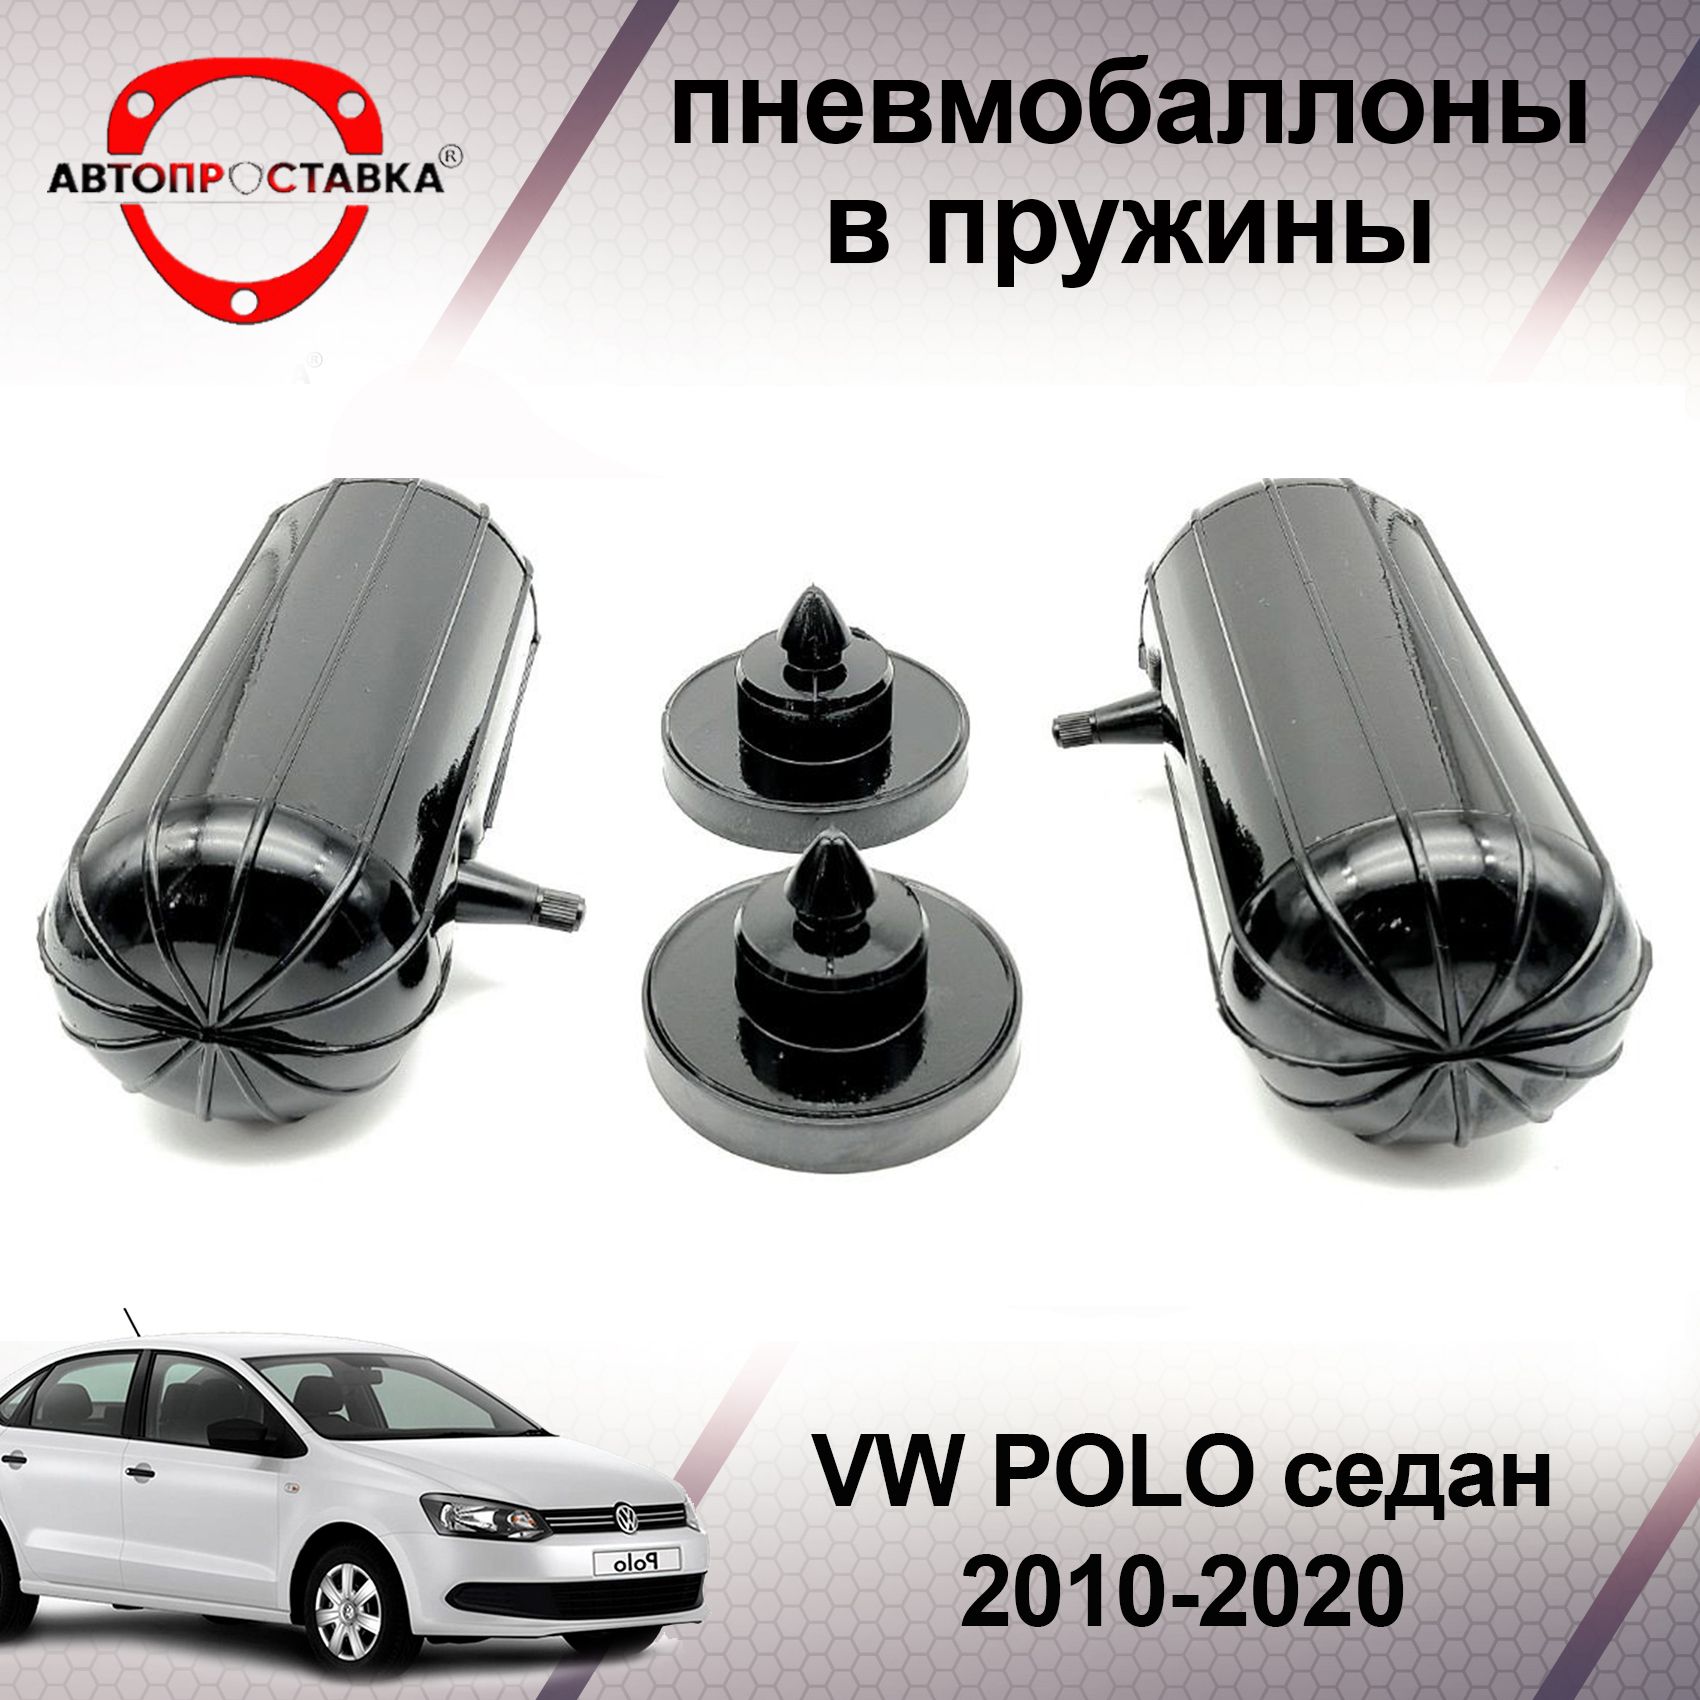 ТО для Фольксваген Поло Седан (Polo sedan): прохождение технического обслуживания по всем правилам